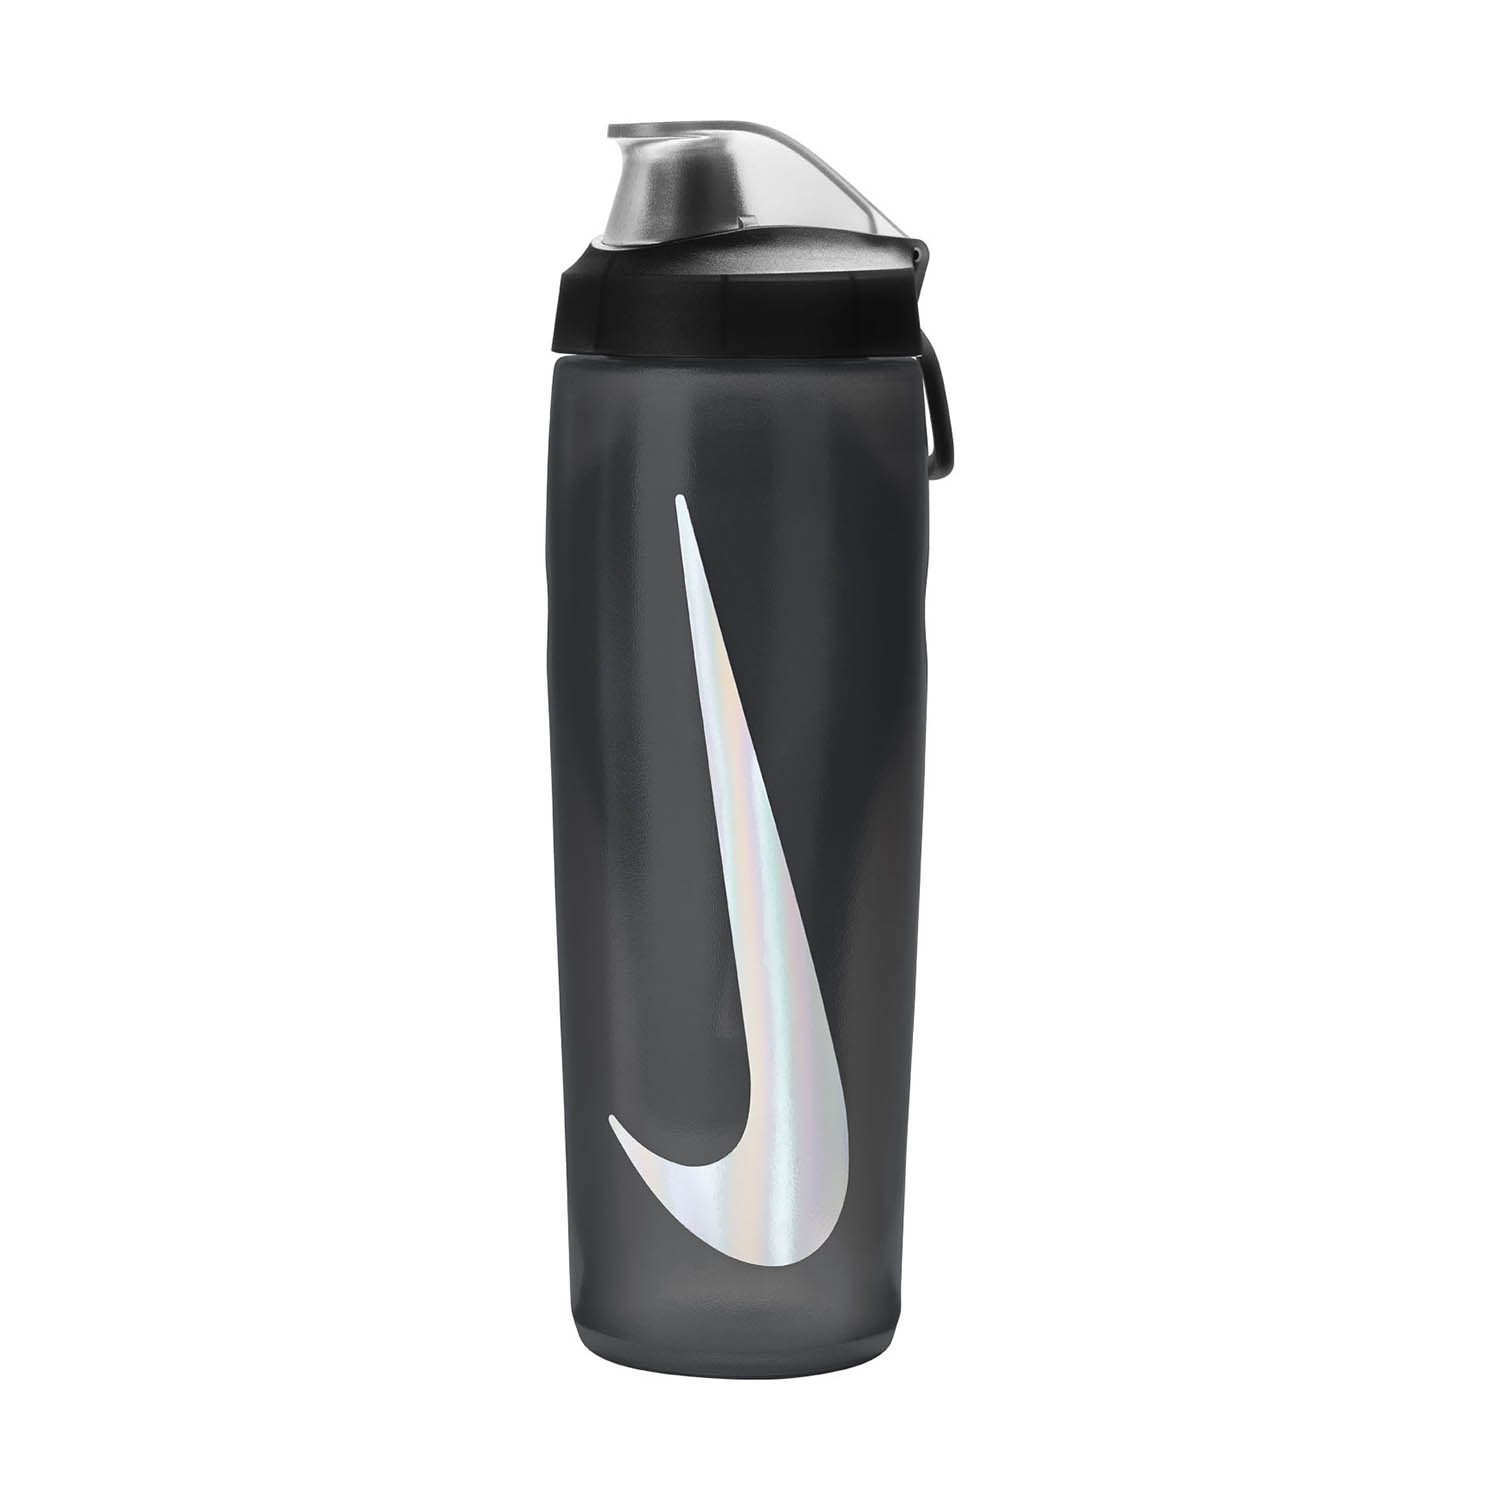 Nike Refuel Locking Borraccia - Anthracite/Black/Silver Iridescent